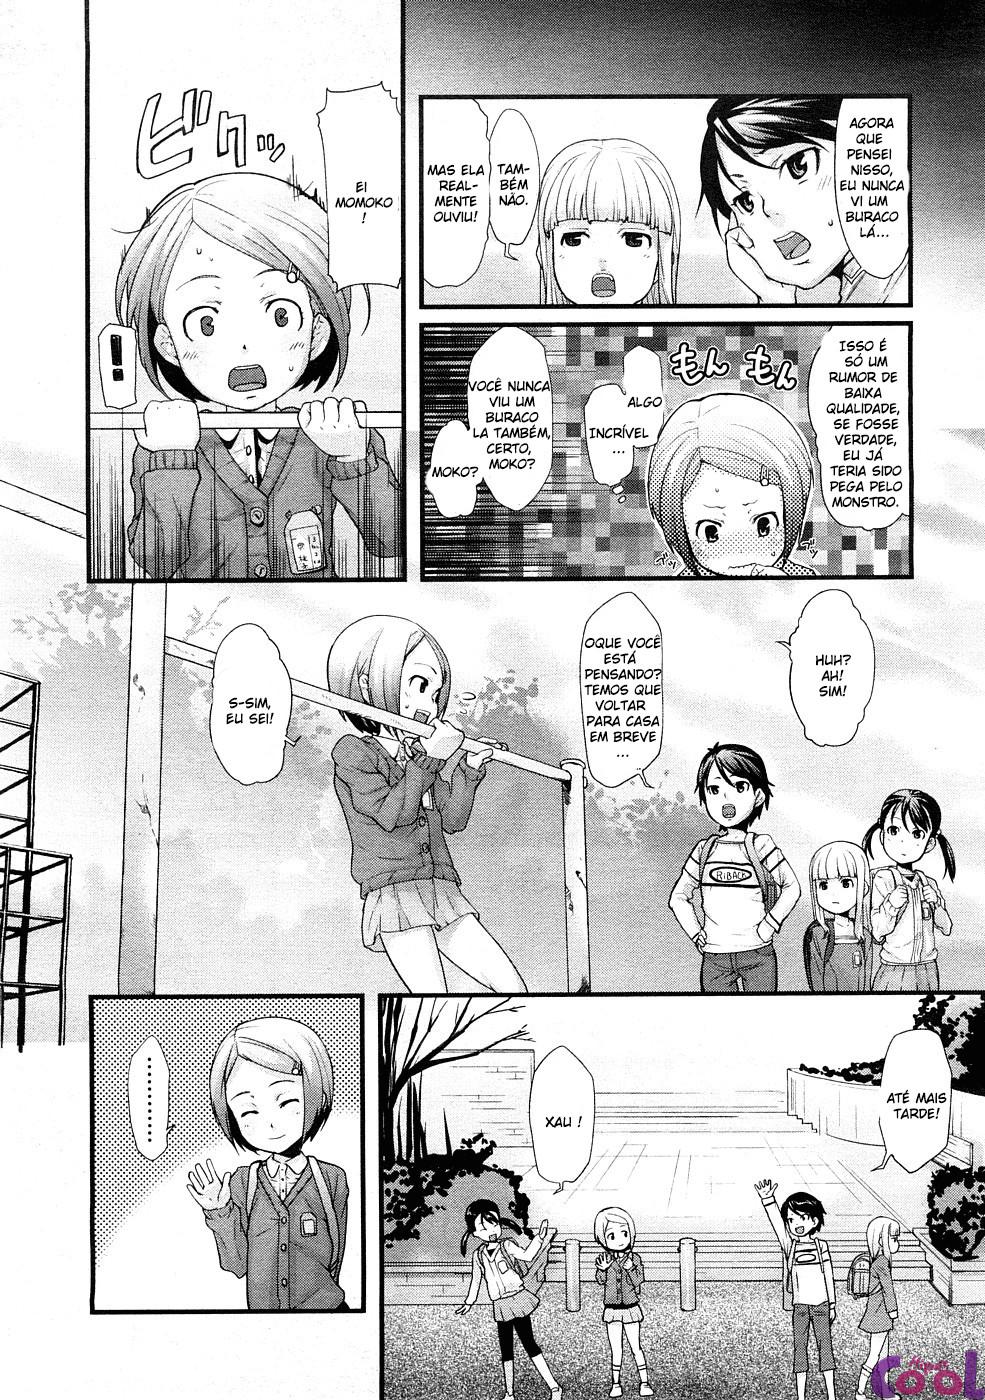 ana-no-toriko-chapter-01-page-02.jpg